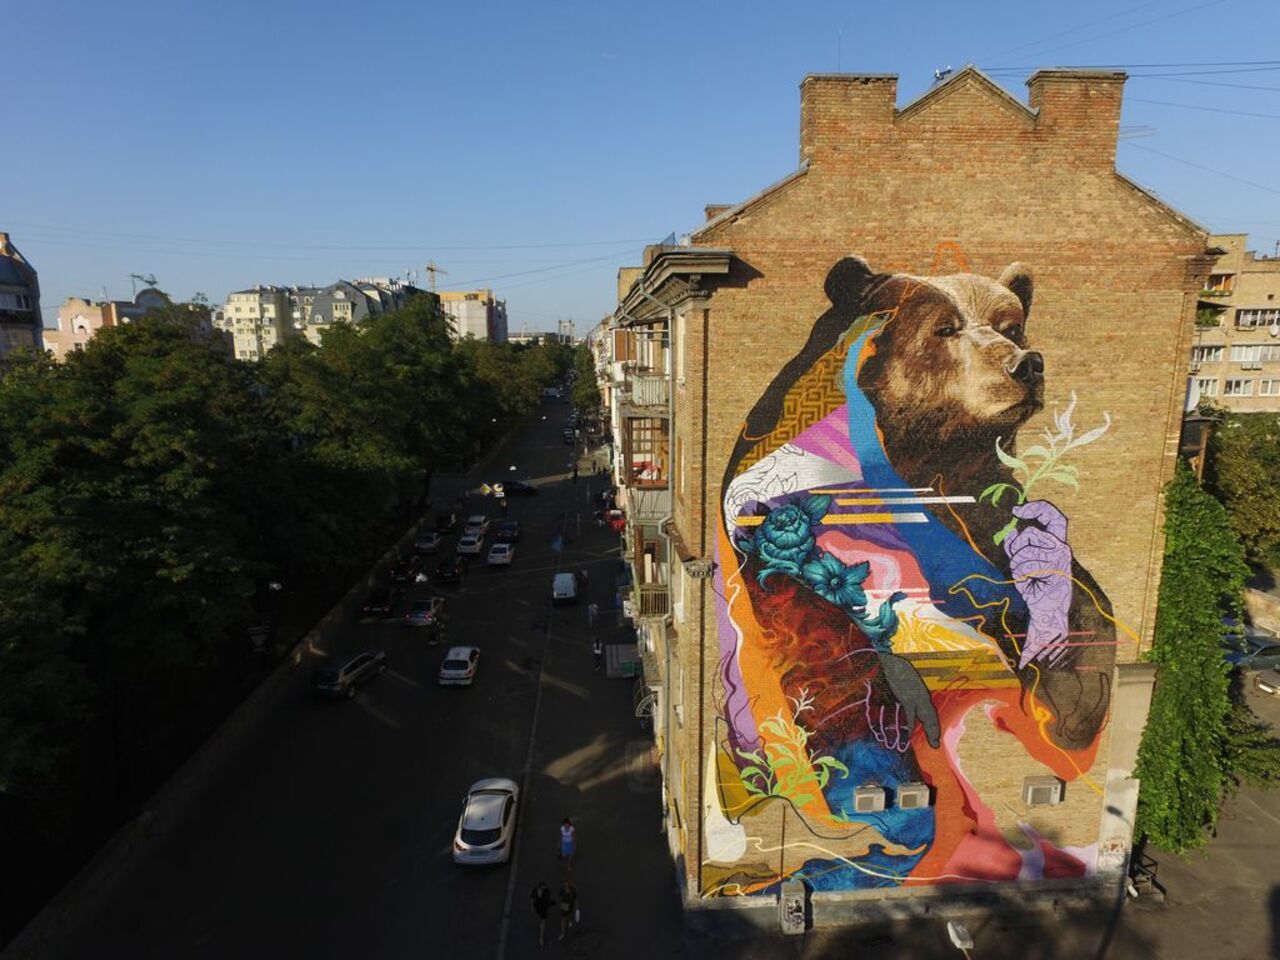 Kraser Tres in Kiev, Ukraine #streetart #mural #graffiti #art https://t.co/2XrI1gUKK9